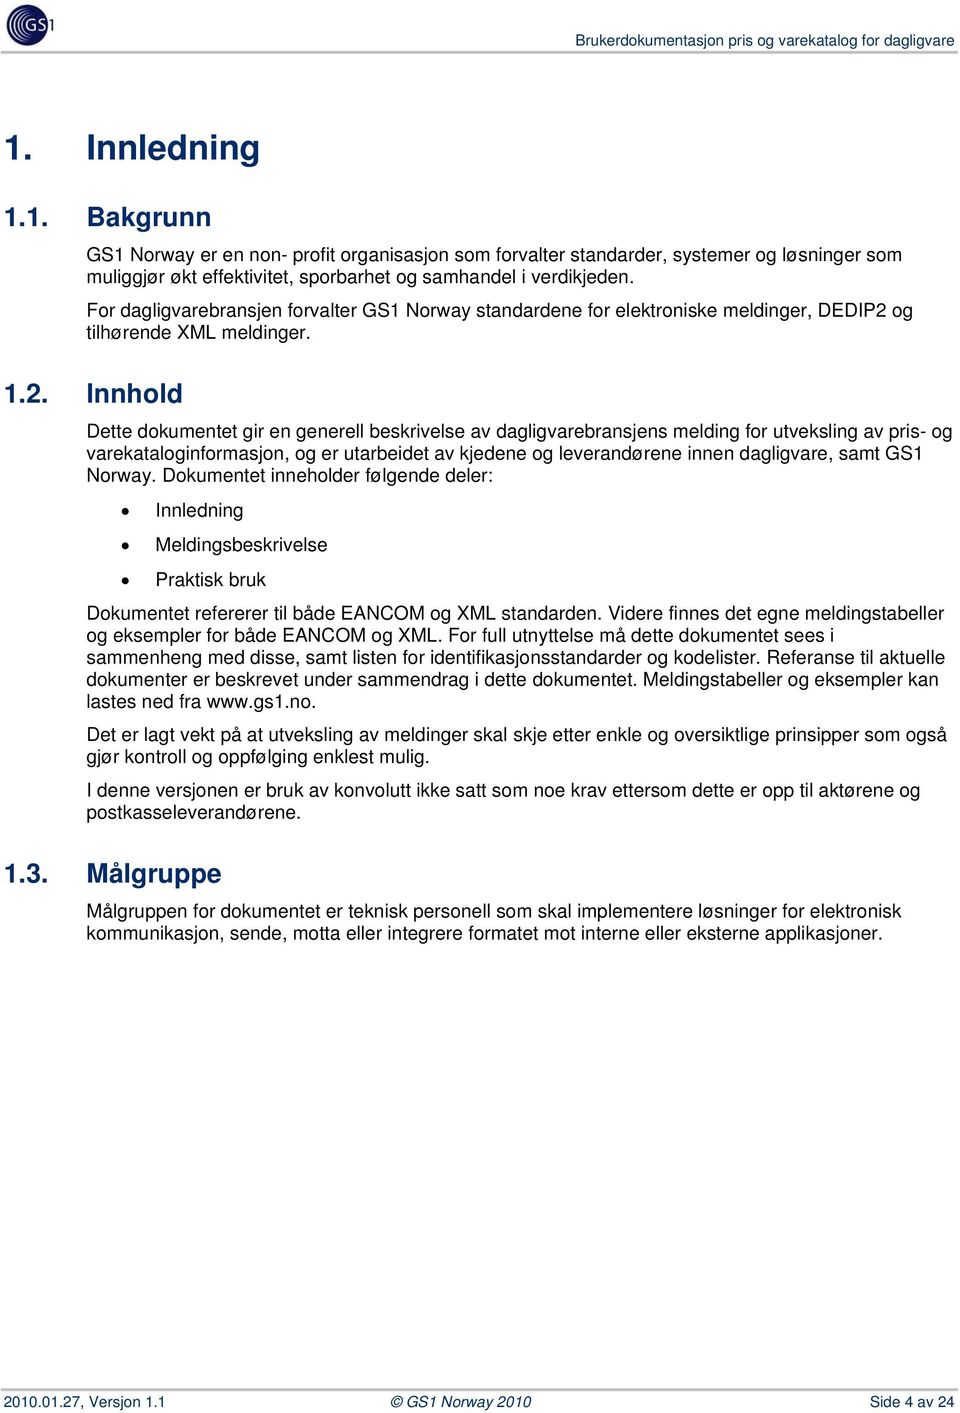 For dagligvarebransjen forvalter GS1 Norway standardene for elektroniske meldinger, DEDIP2 